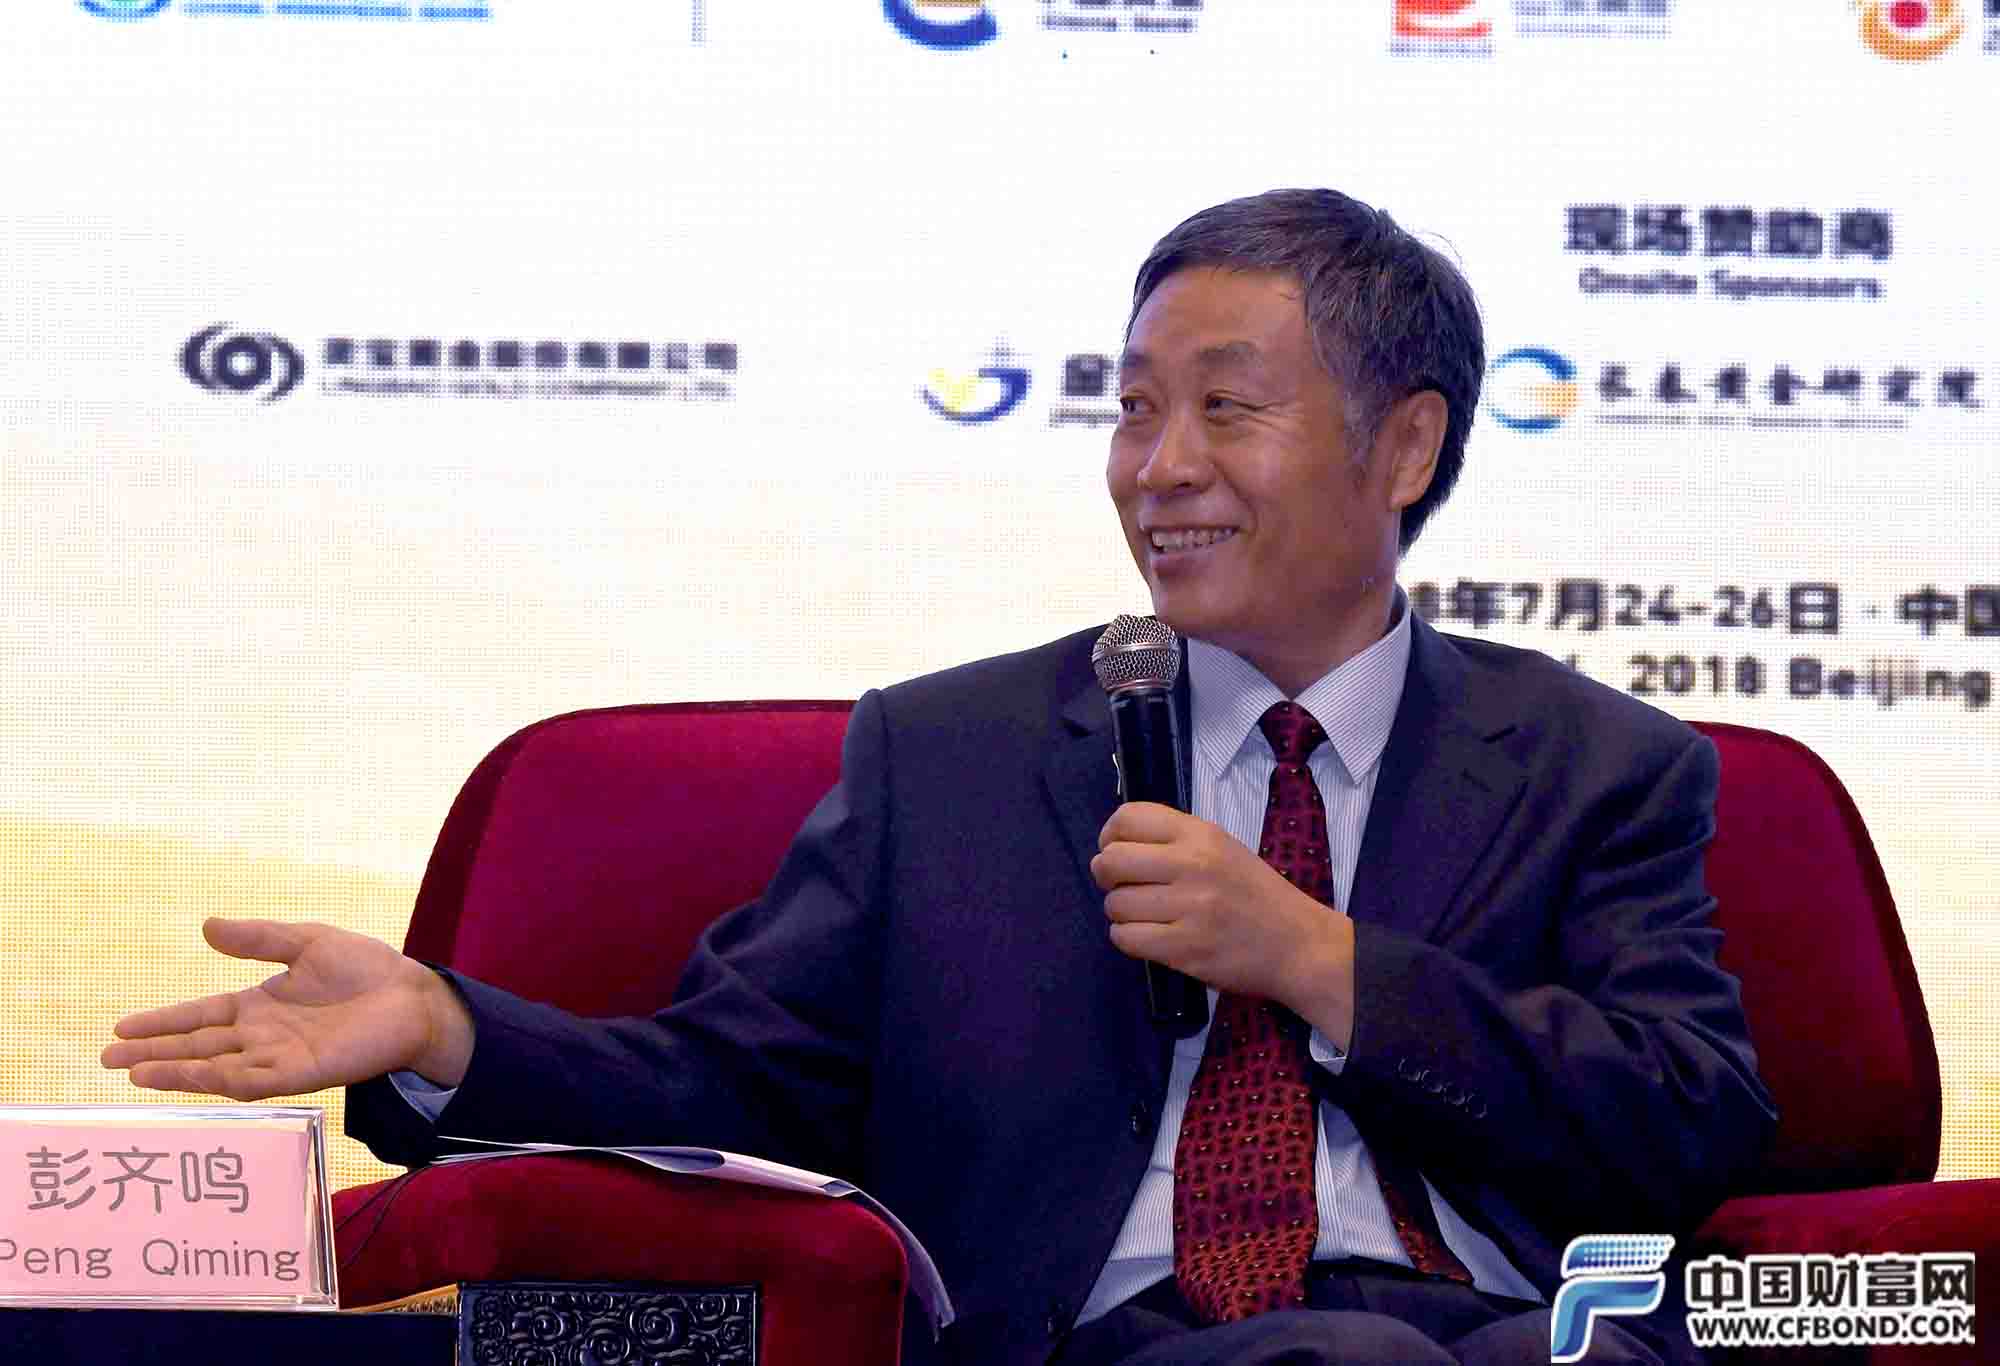 中国矿业联合会会长彭齐鸣主持圆桌对话